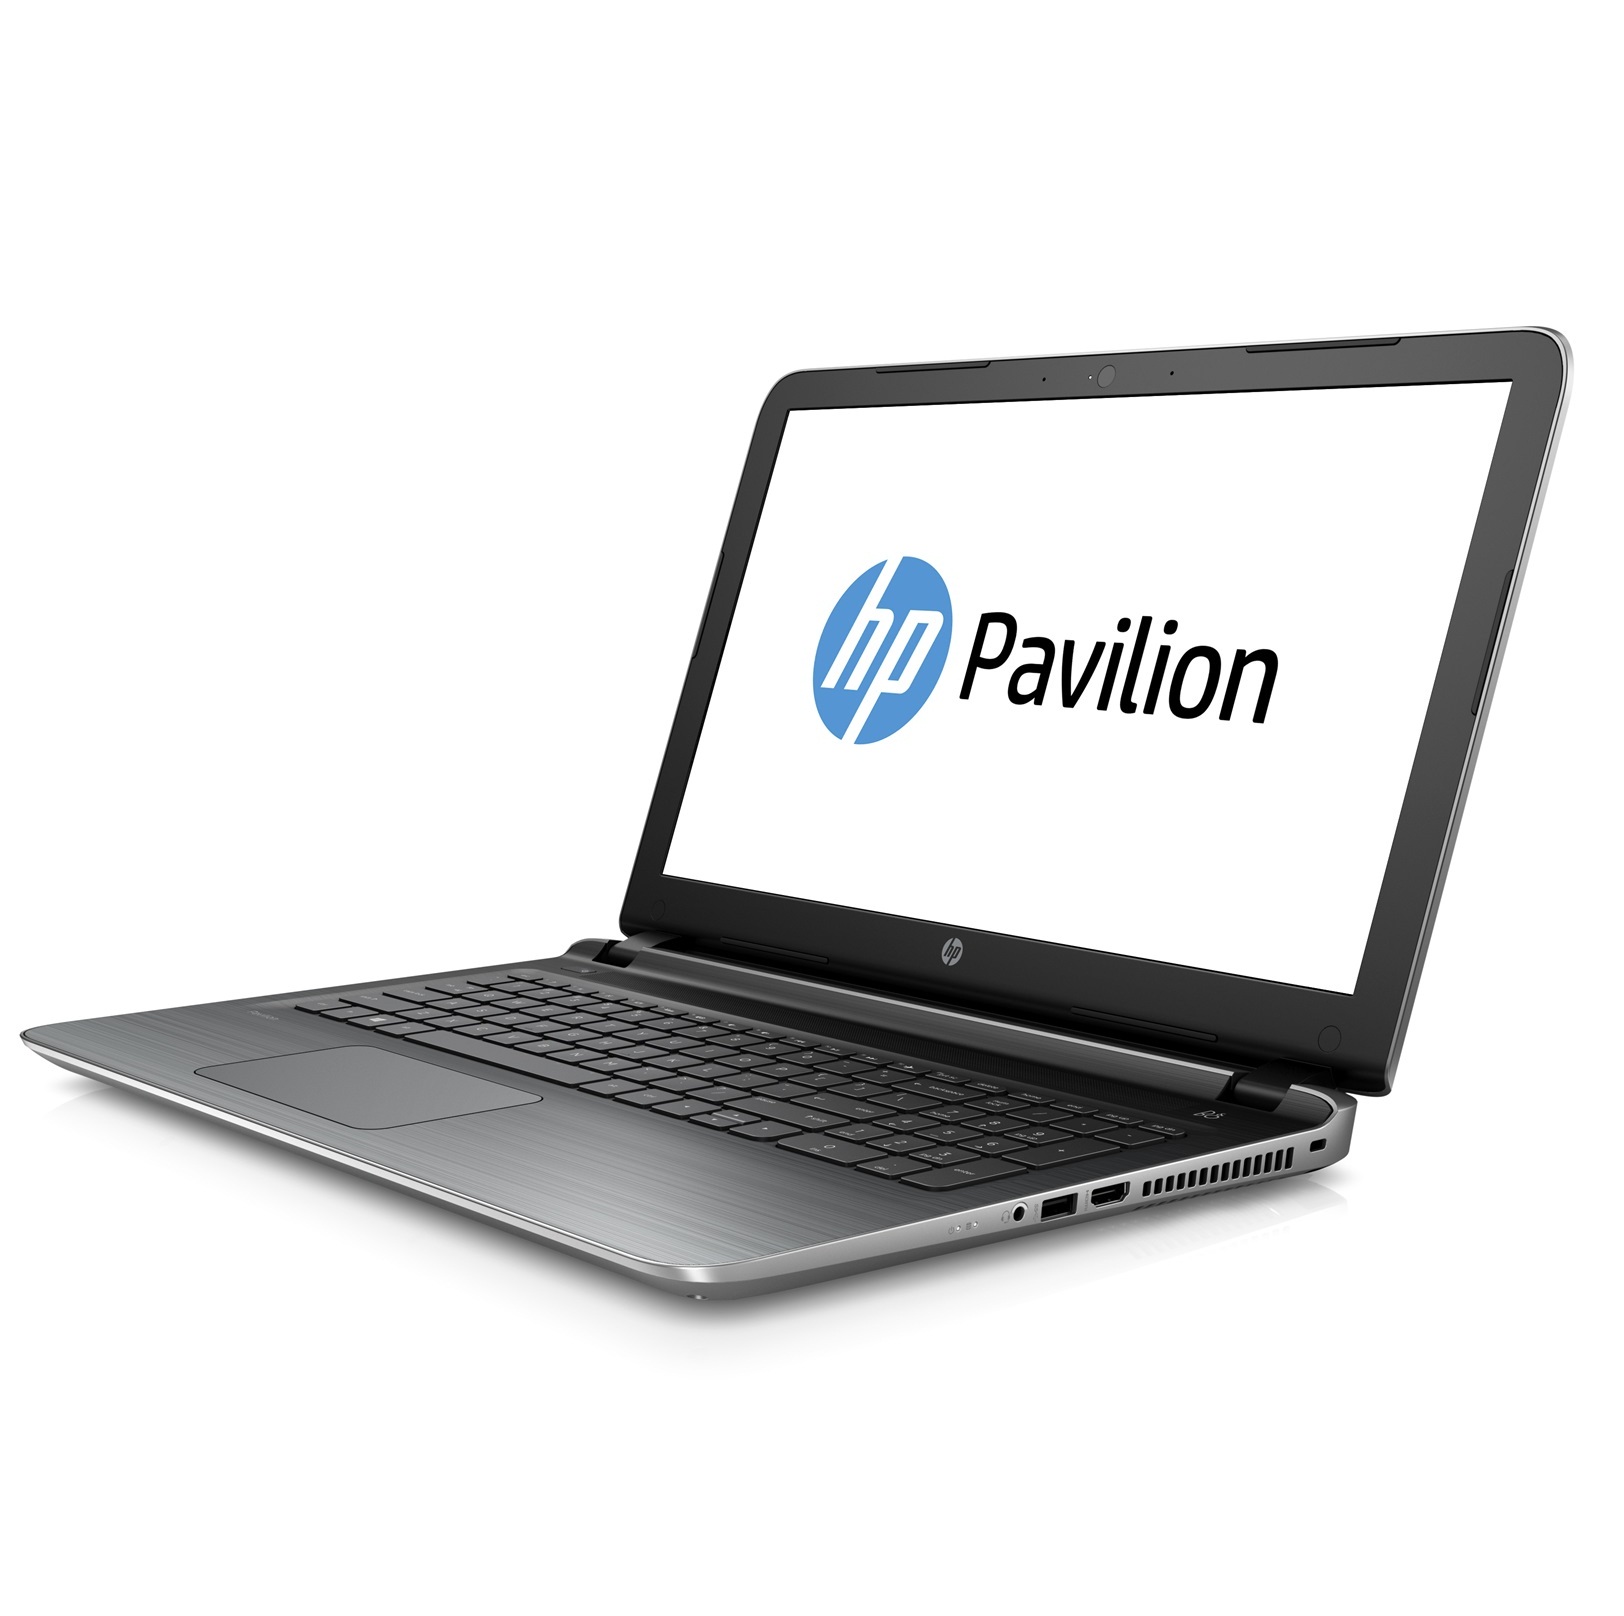 Laptop HP Core i5 Pavilion 15 - au062TX X3C04PA (Silver)